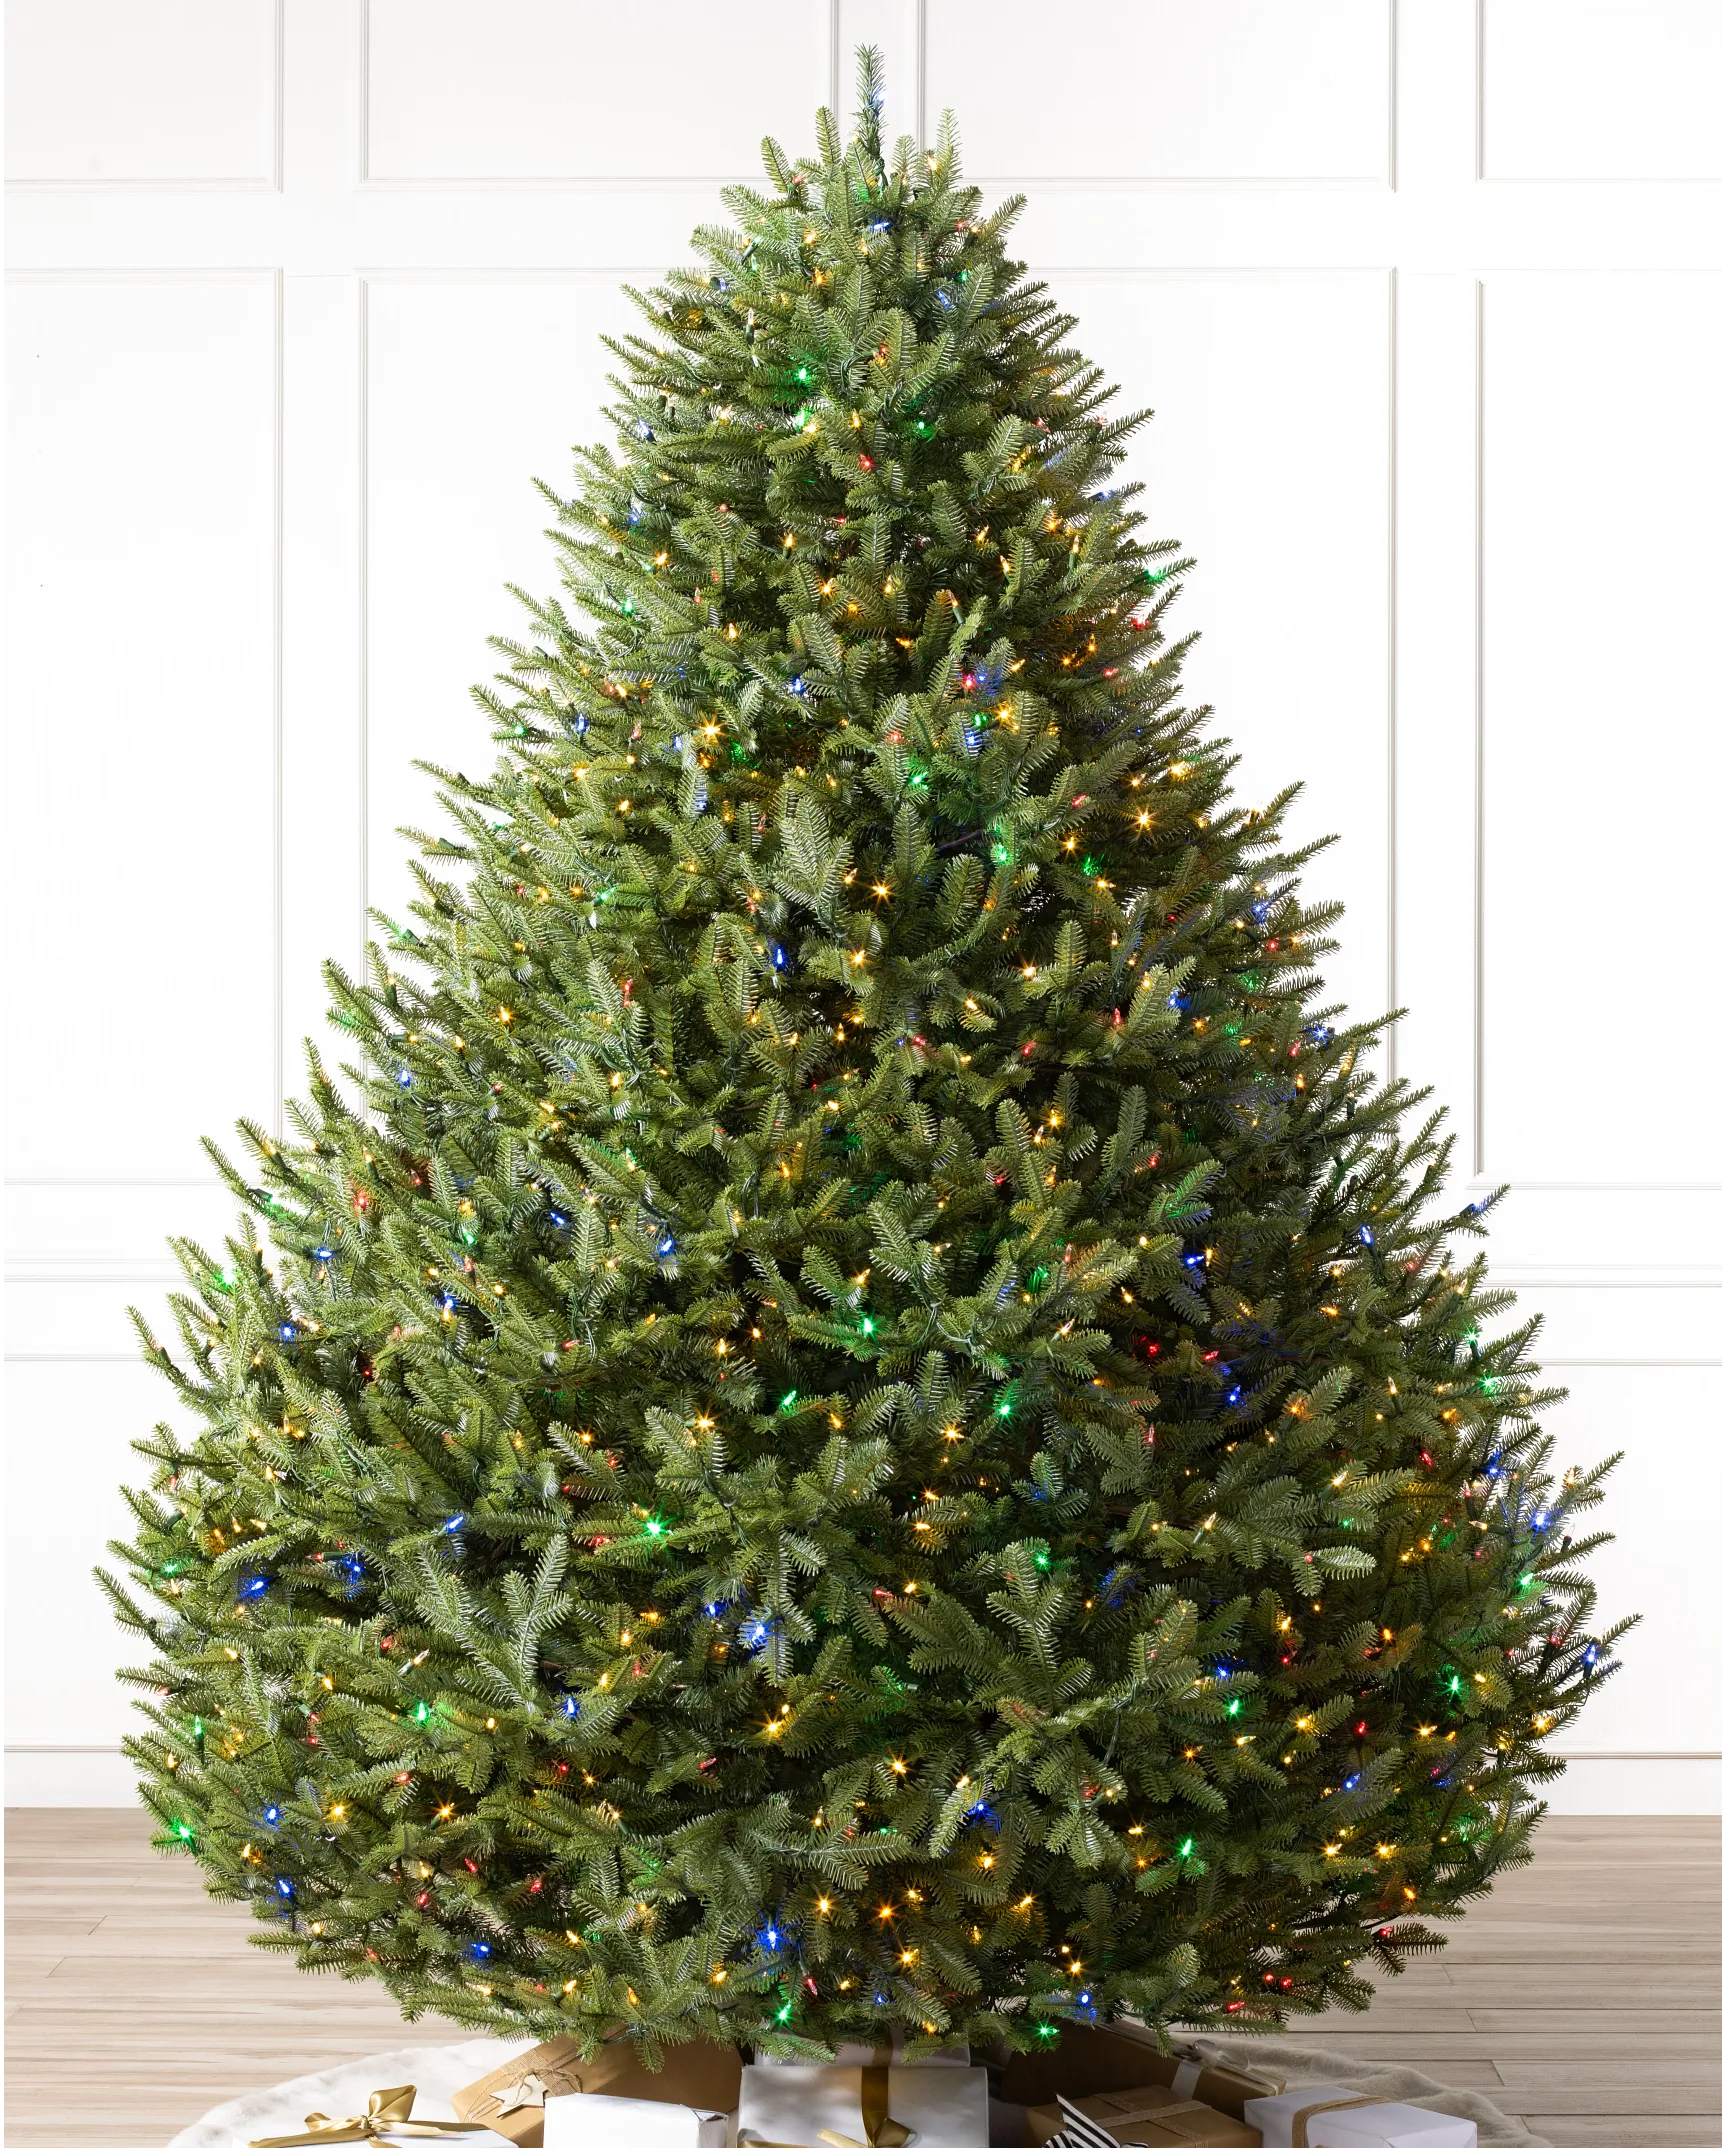 Review: This  Smart Plug Makes Lighting My Christmas Tree Easy